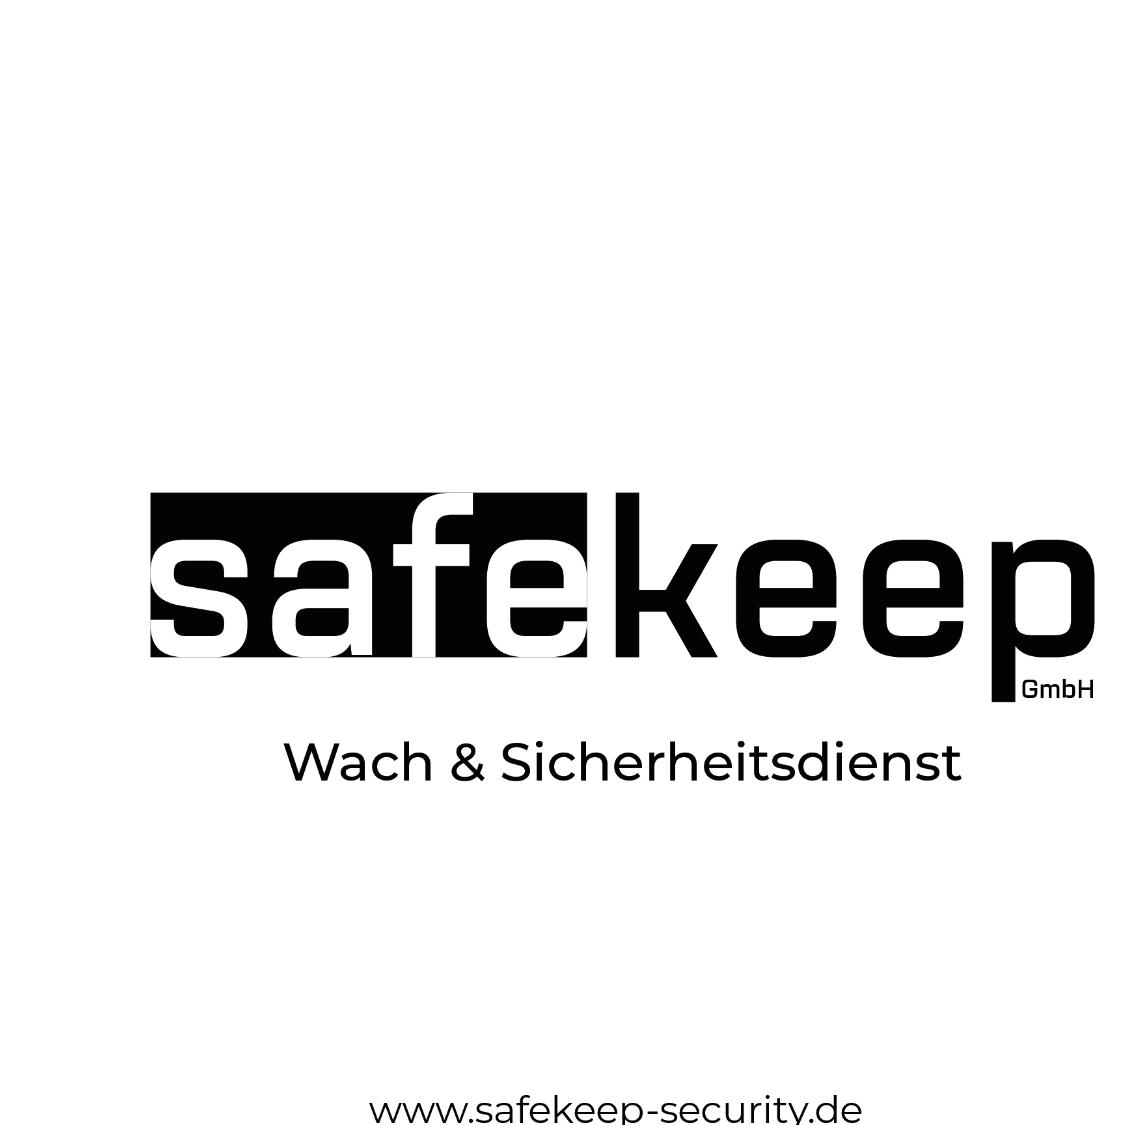 Bild der SafeKeep GmbH